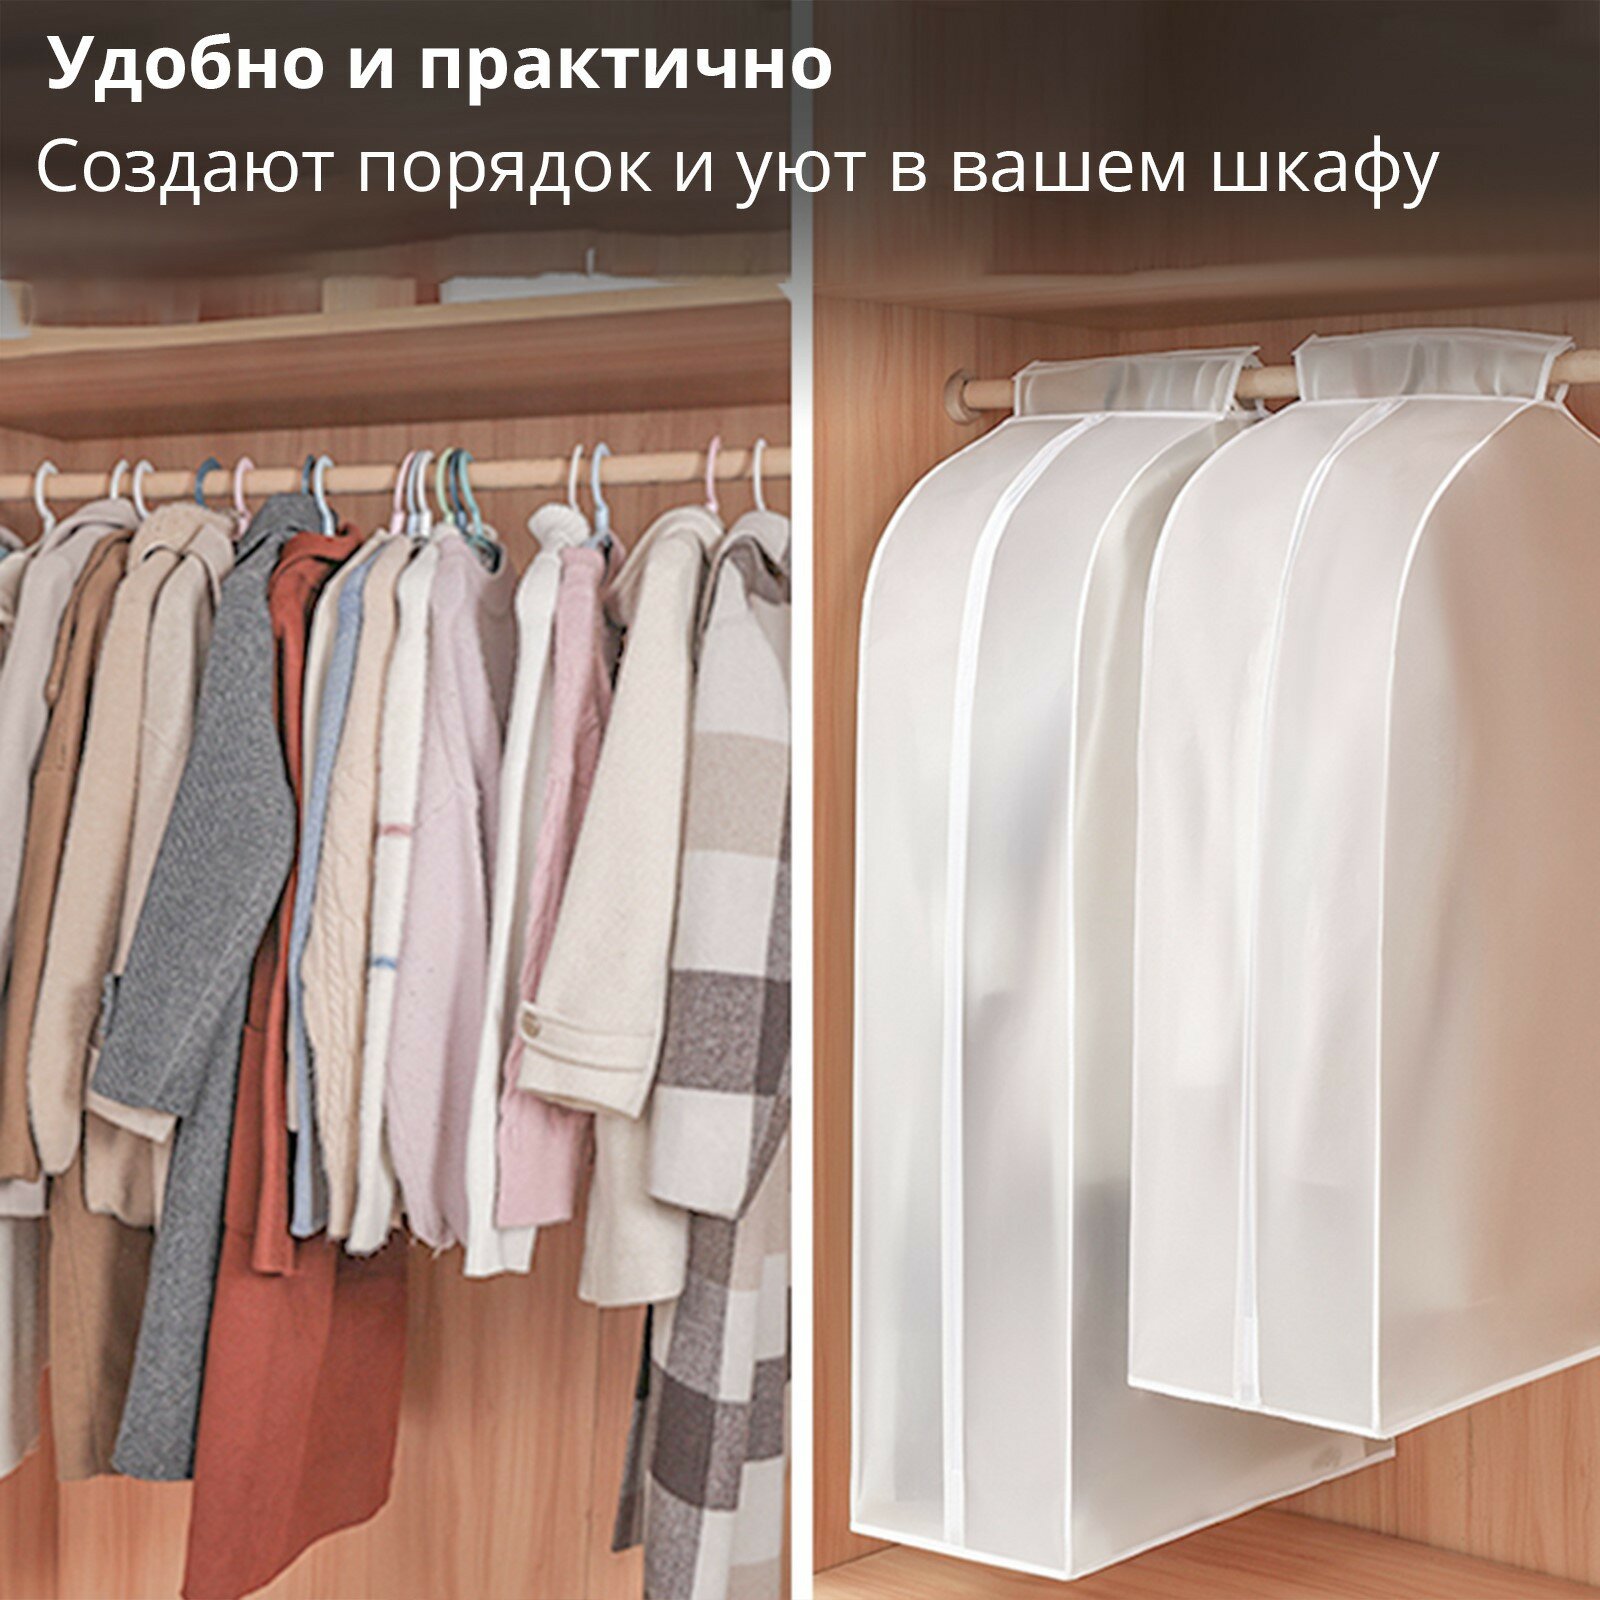 Чехол для одежды 60×90×50 см, PEVA, цвет белый